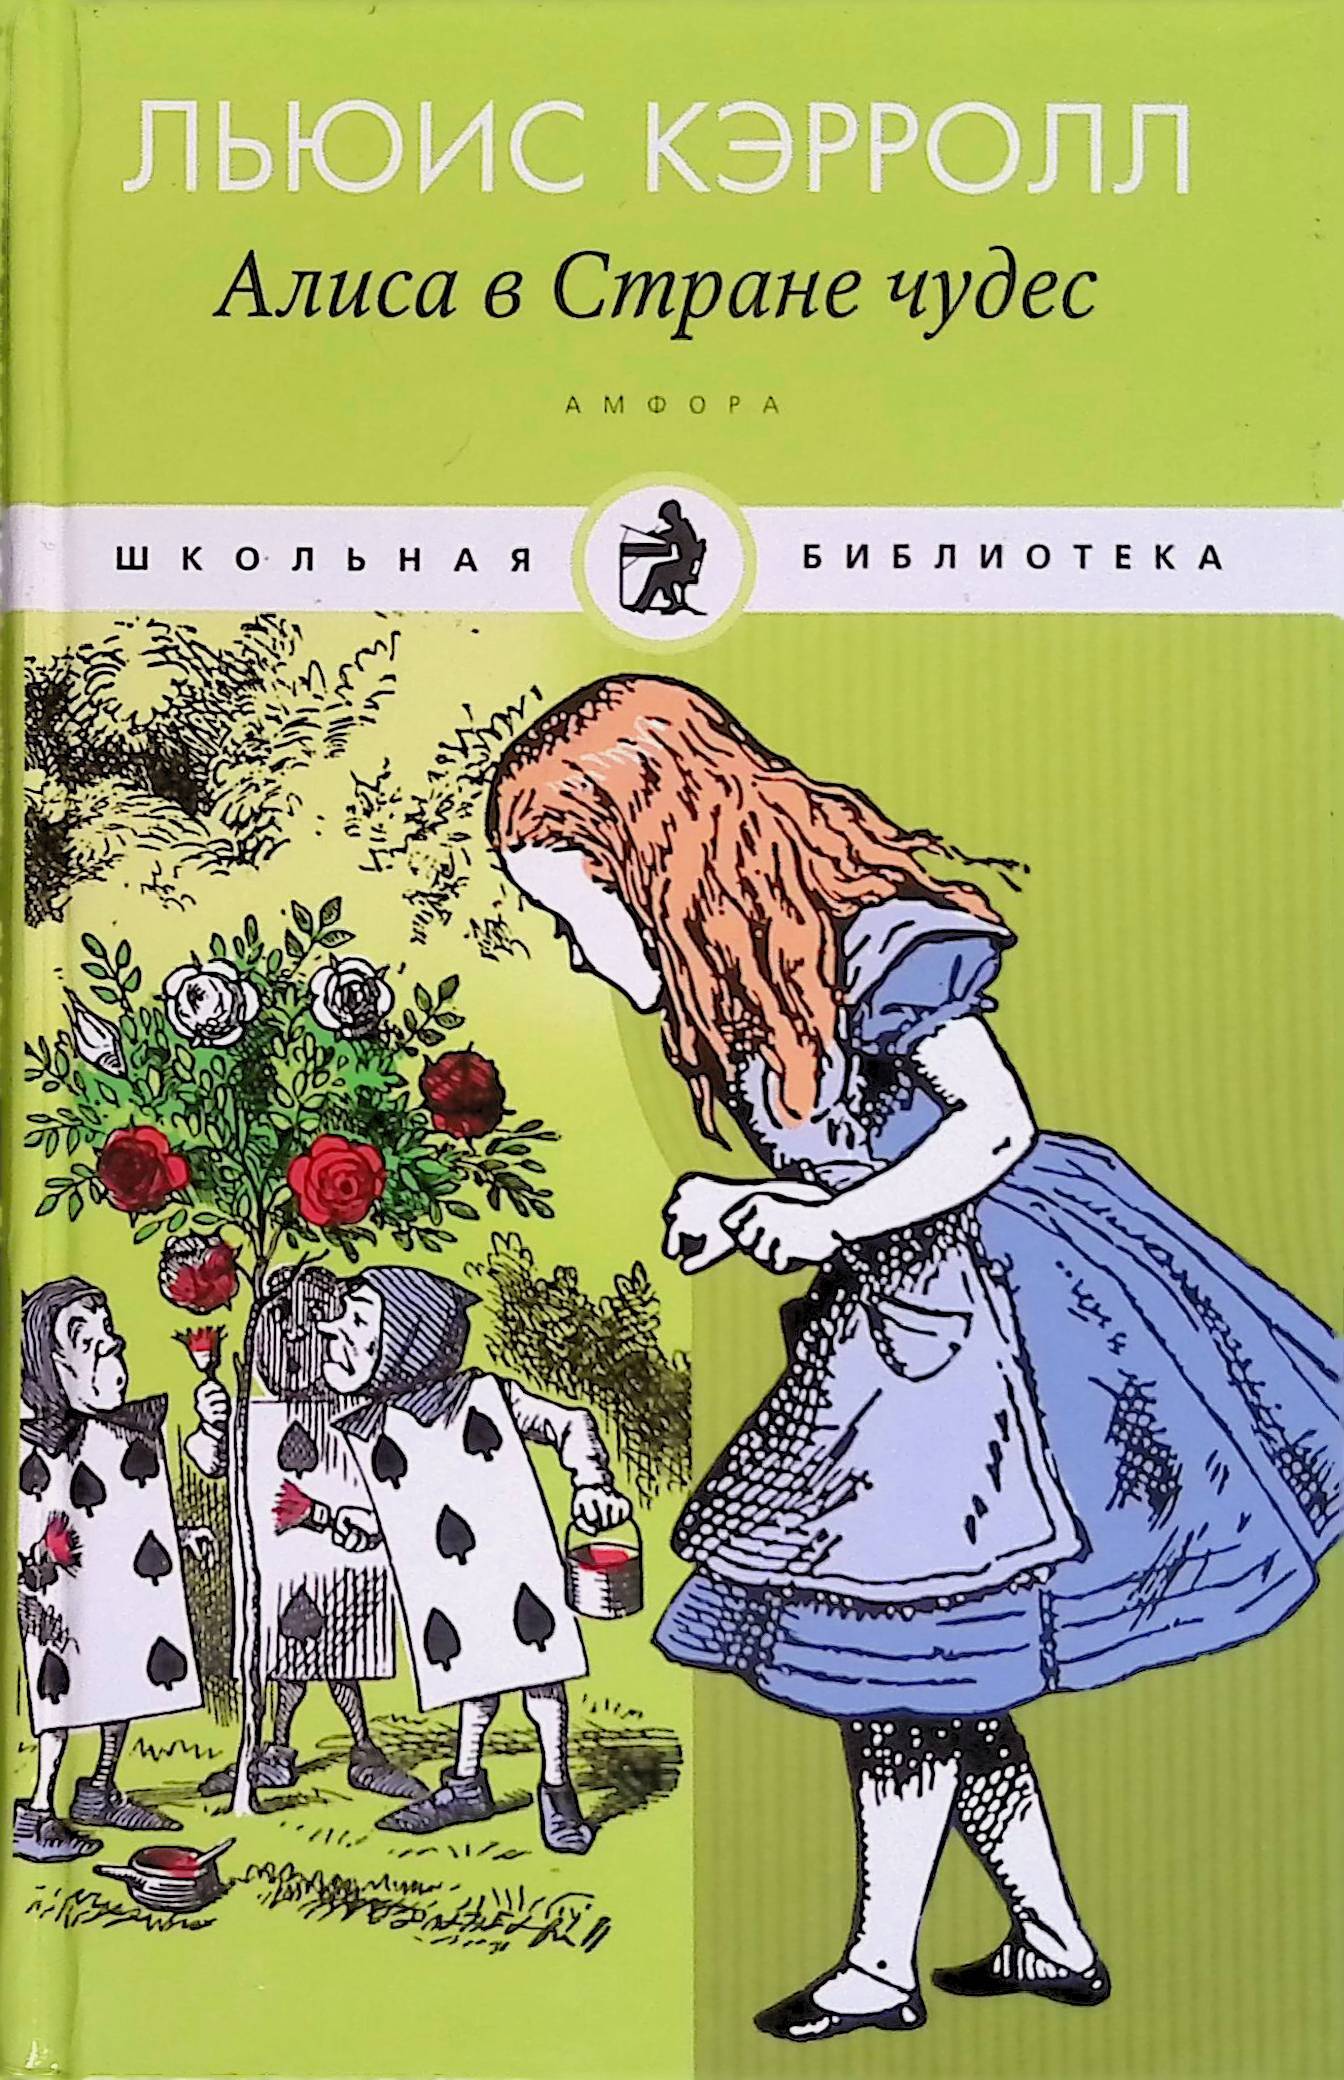 Купить Книга Приключения Алисы В Чудеса